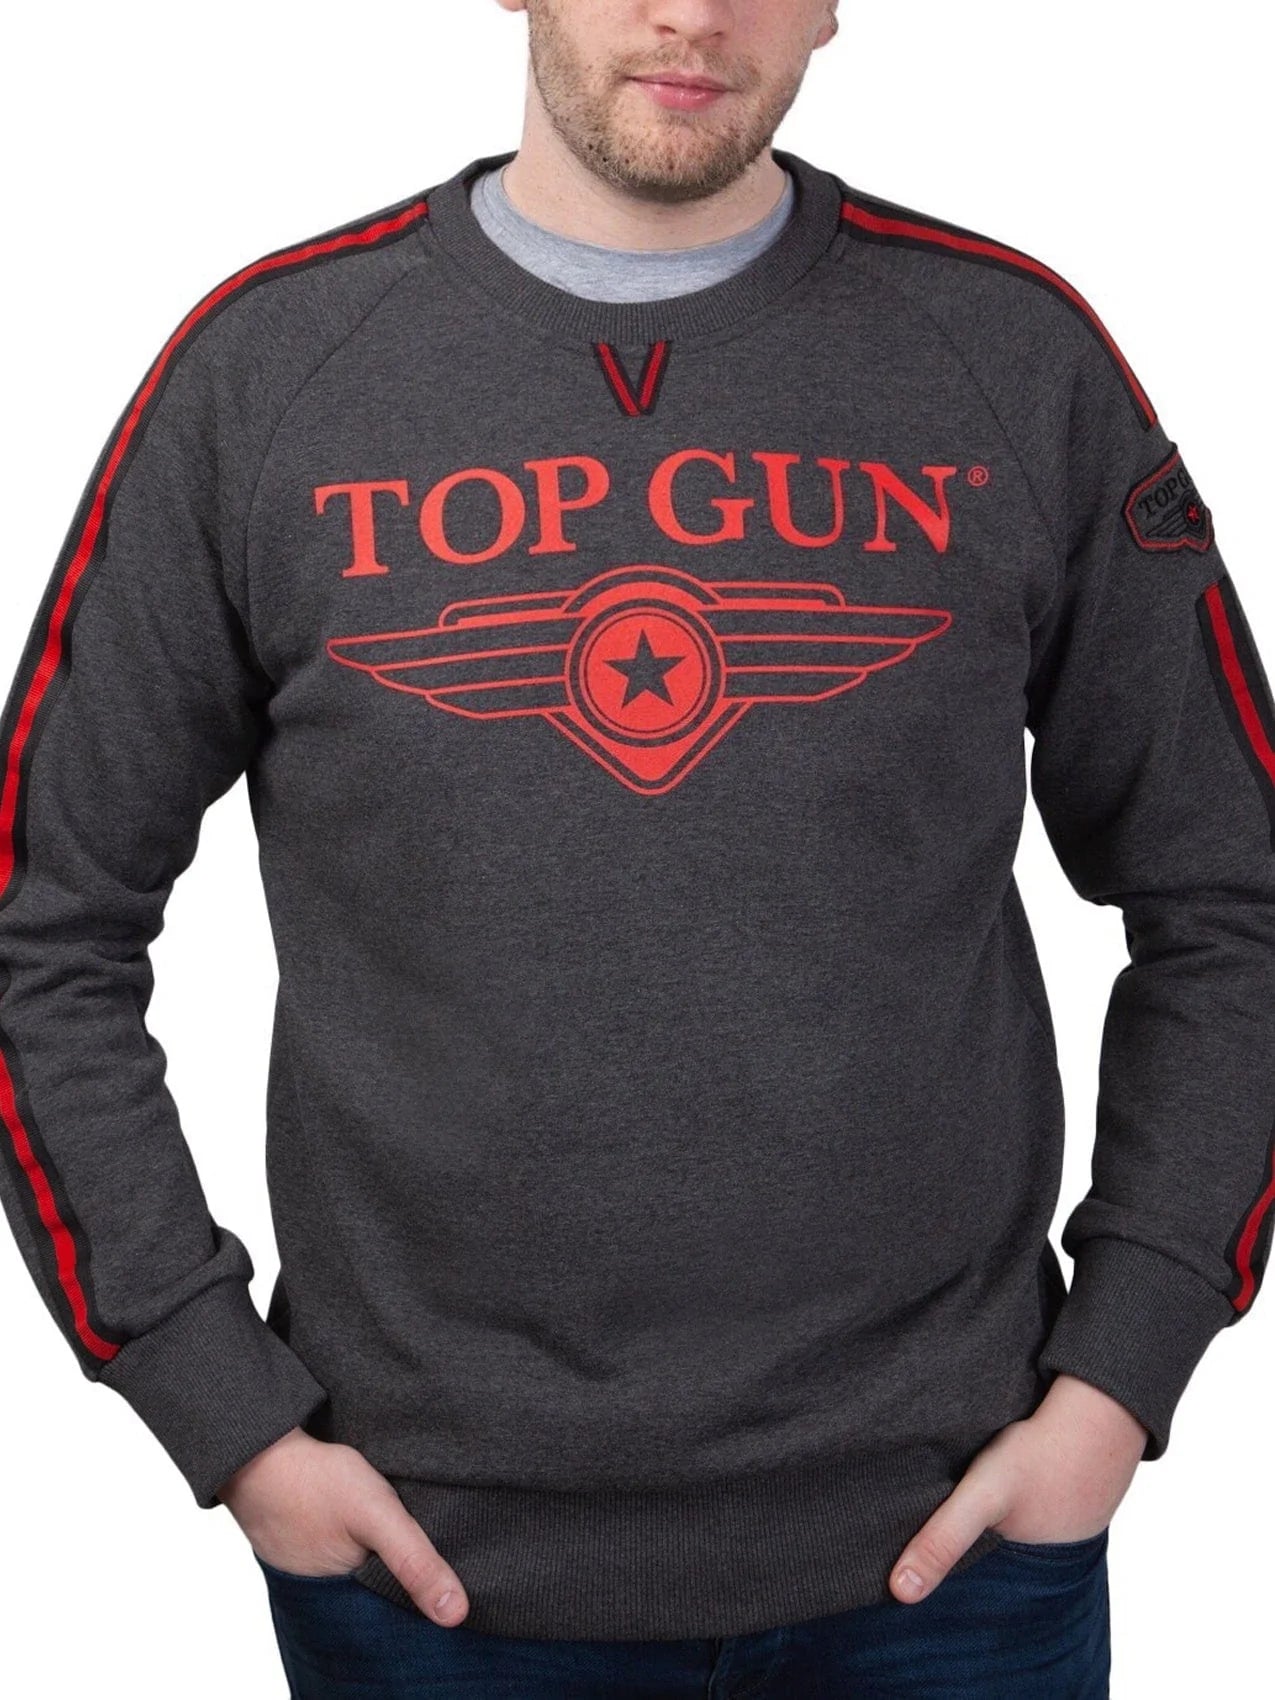 Top GunCrew Neck Sweatshirt "Streak Logo" with Patches, Grey